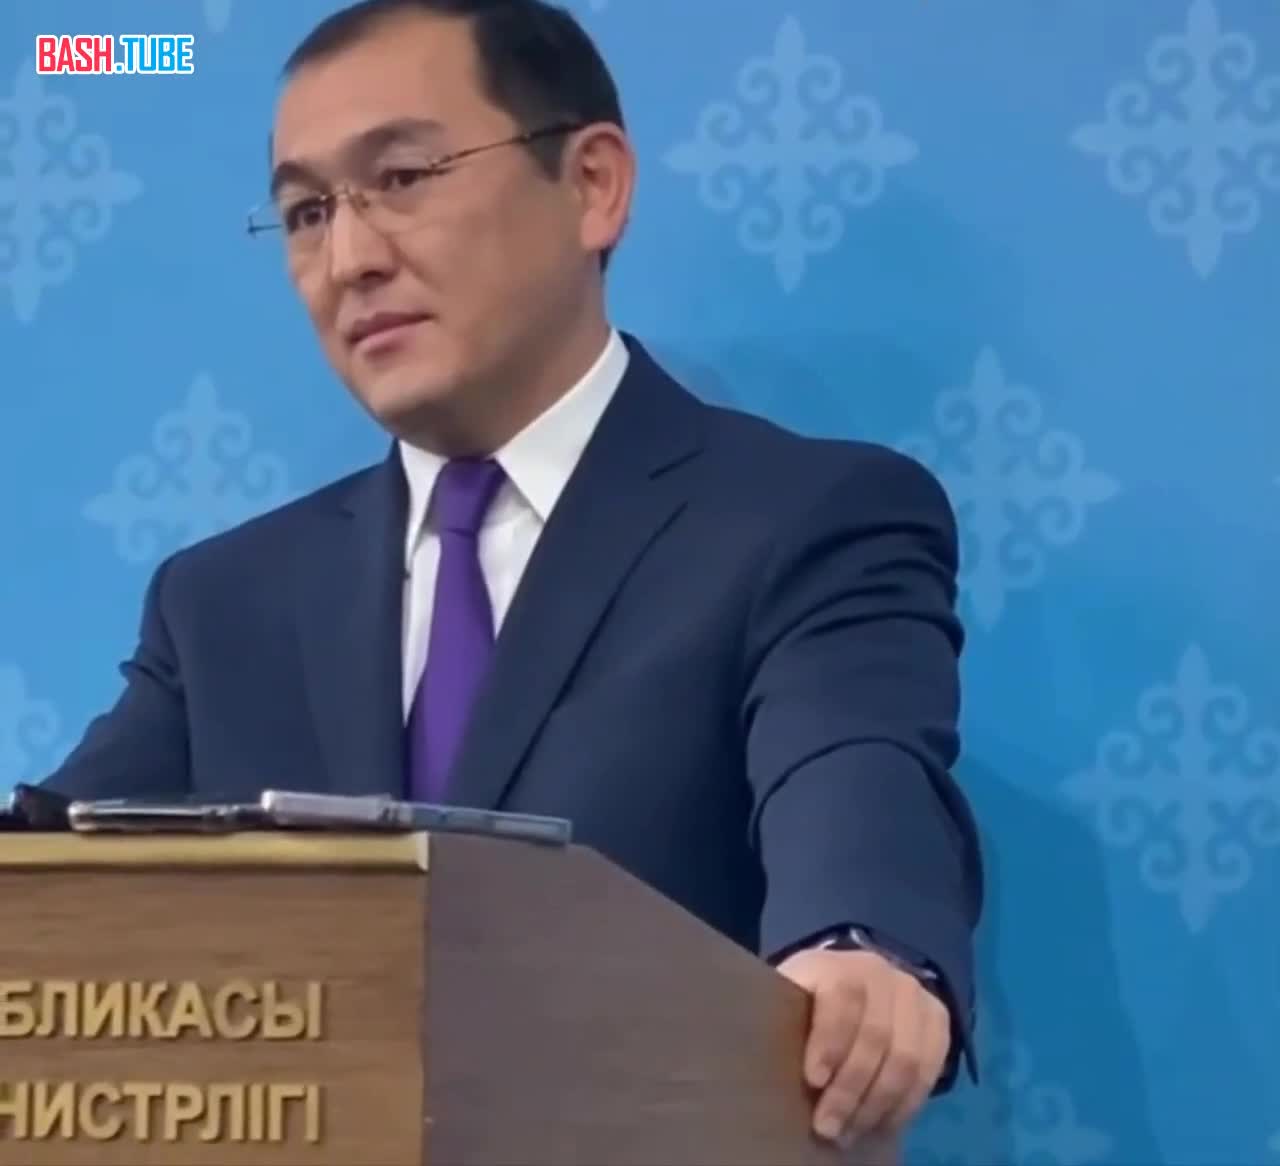  Власти Казахстана ведут список иностранных граждан, которые негативно отзываются о республике